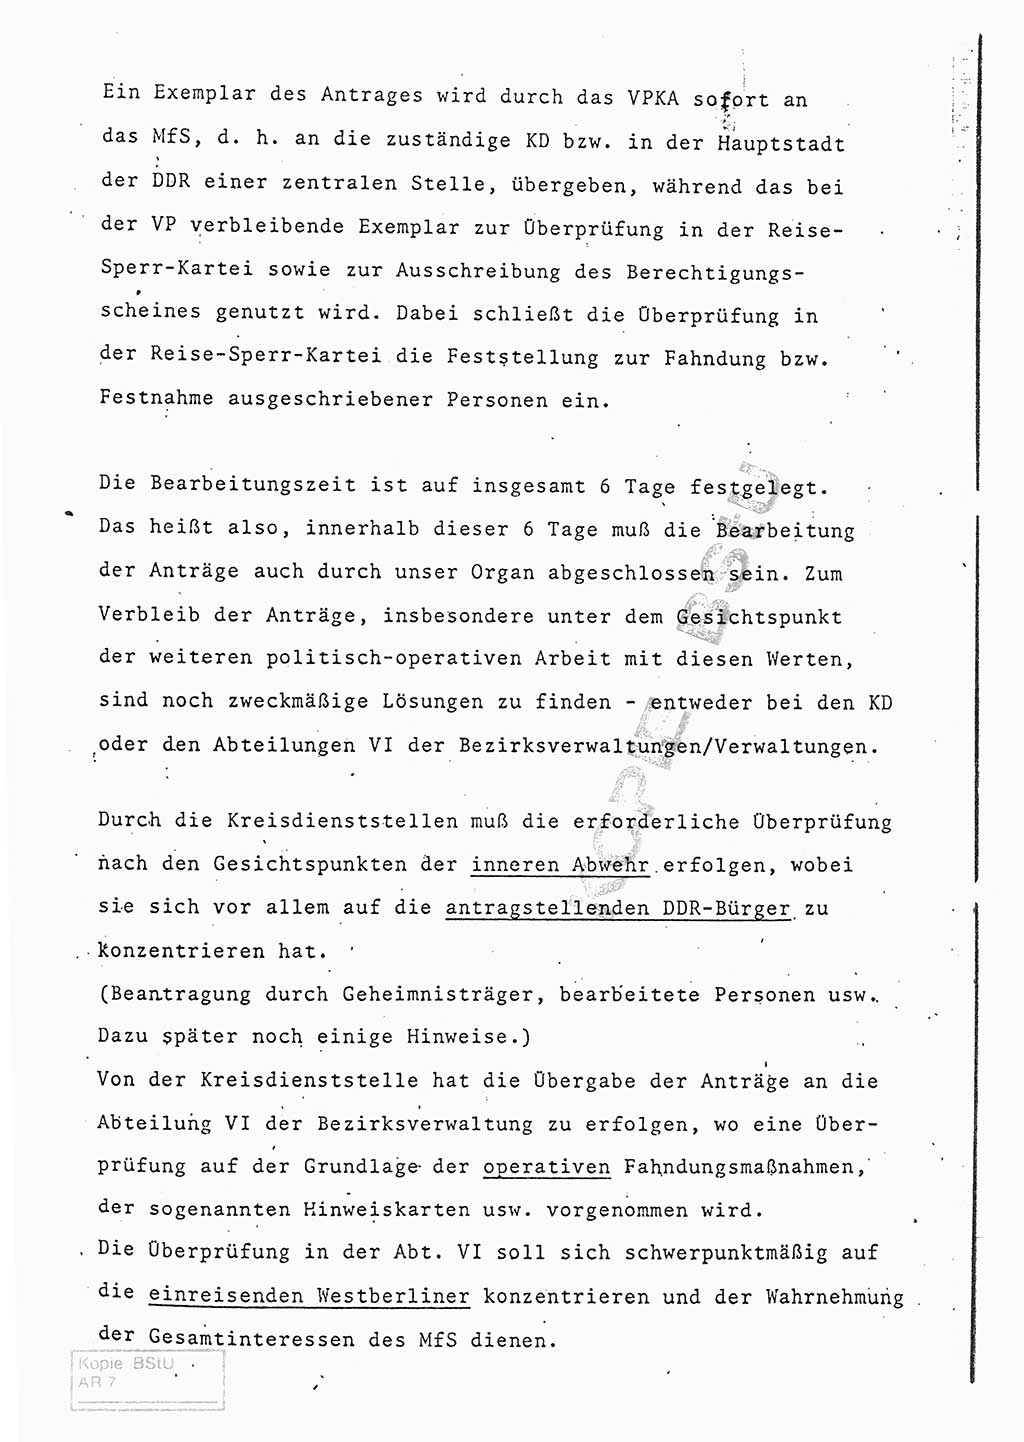 Referat (Entwurf) des Genossen Minister (Generaloberst Erich Mielke) auf der Dienstkonferenz 1972, Ministerium für Staatssicherheit (MfS) [Deutsche Demokratische Republik (DDR)], Der Minister, Geheime Verschlußsache (GVS) 008-150/72, Berlin 25.2.1972, Seite 175 (Ref. Entw. DK MfS DDR Min. GVS 008-150/72 1972, S. 175)